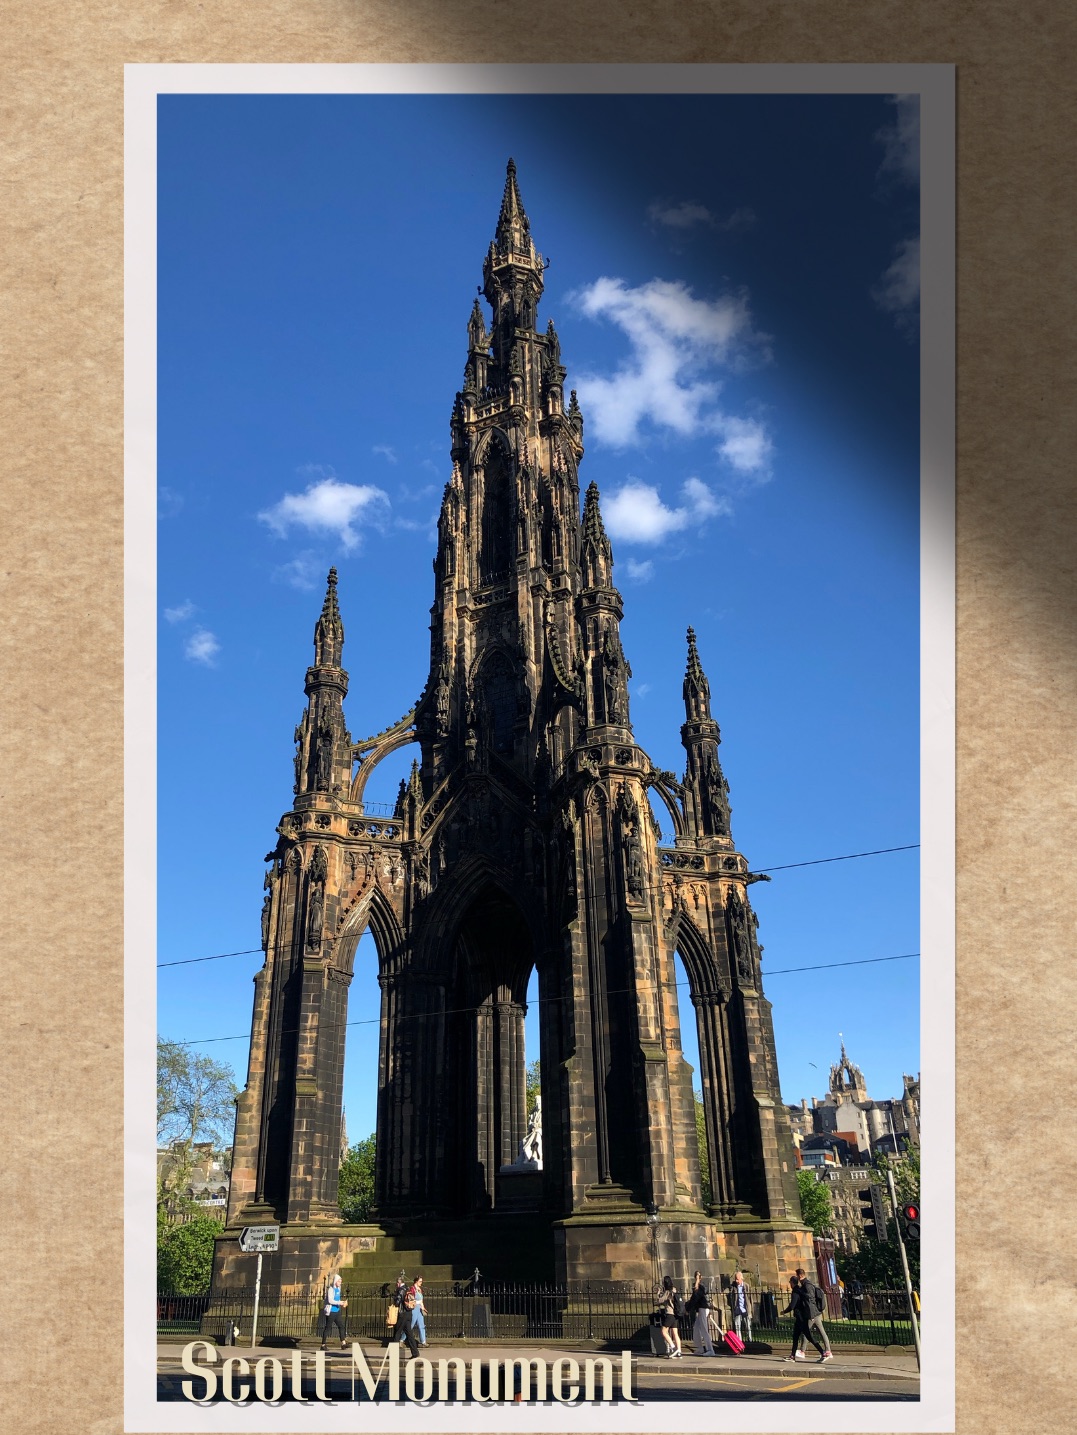 于爱丁堡探索世界上最高的作家纪念碑